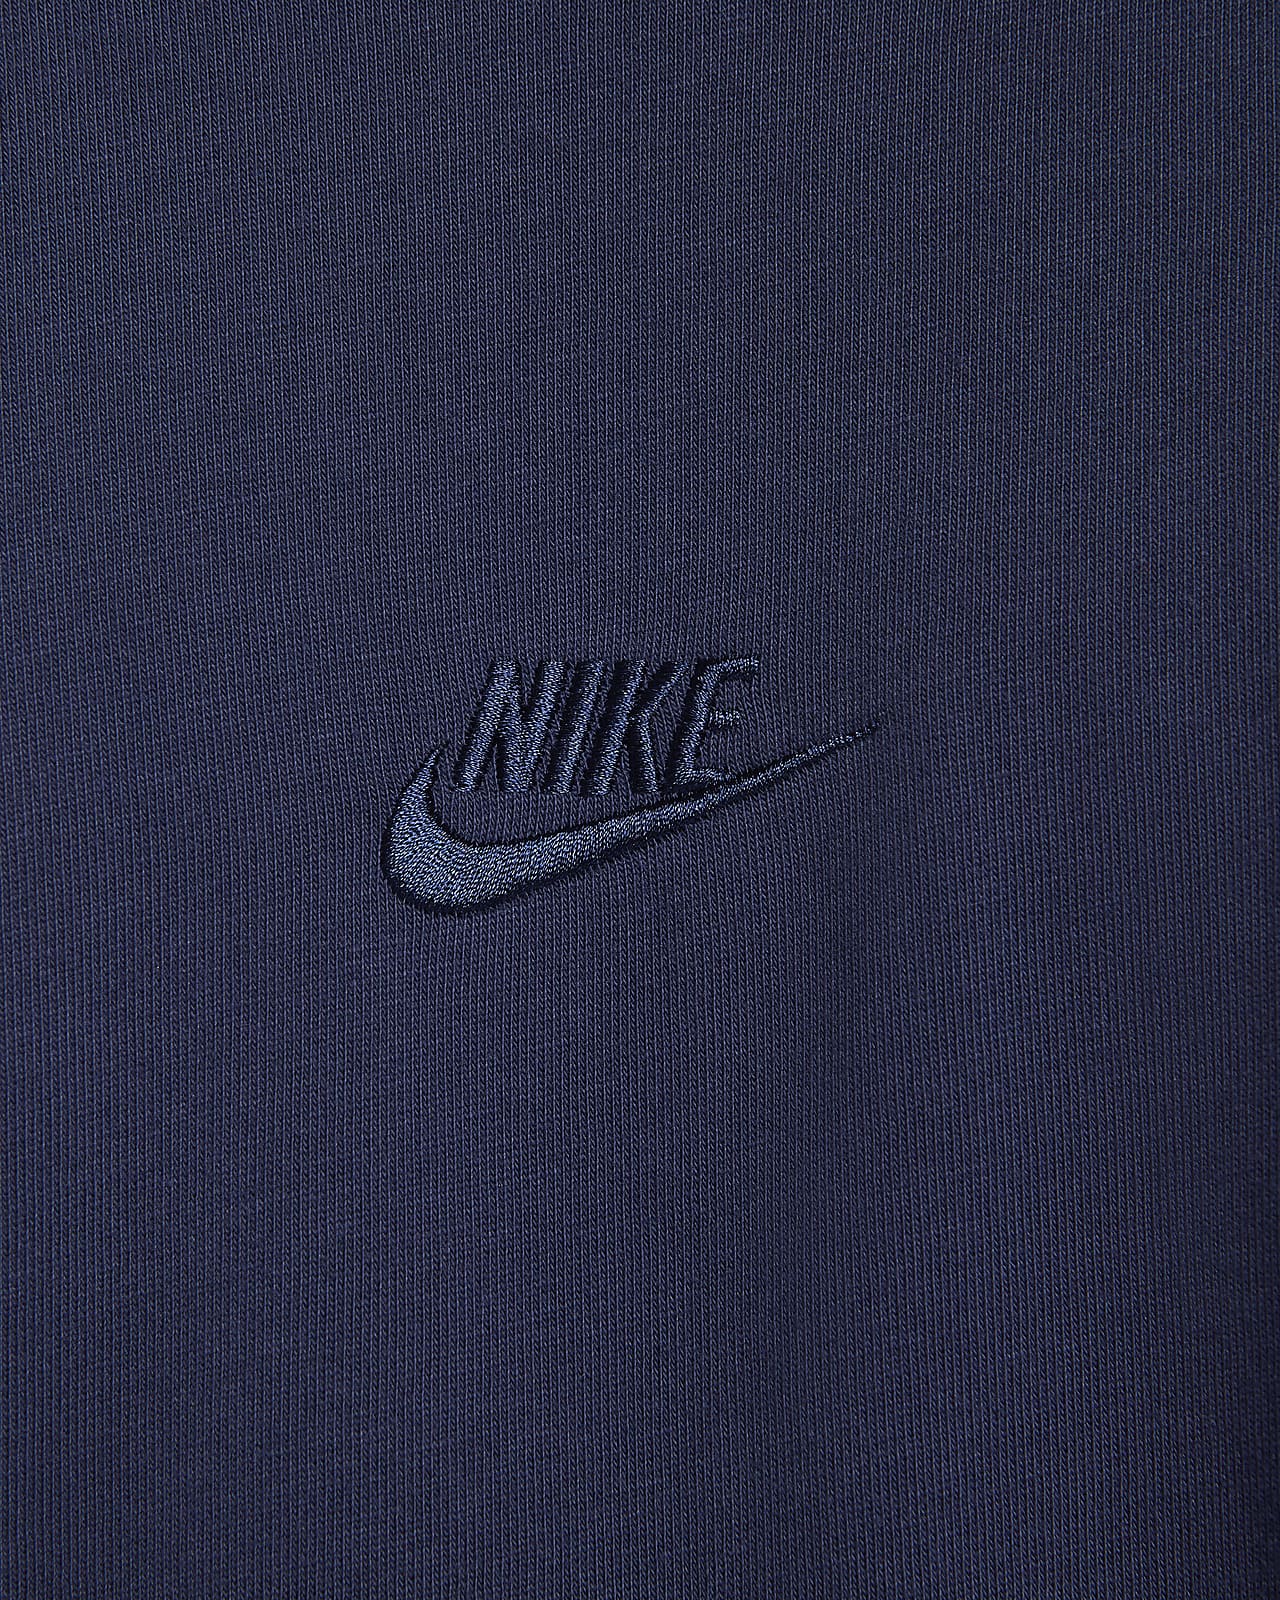 Débardeur Nike Sportswear